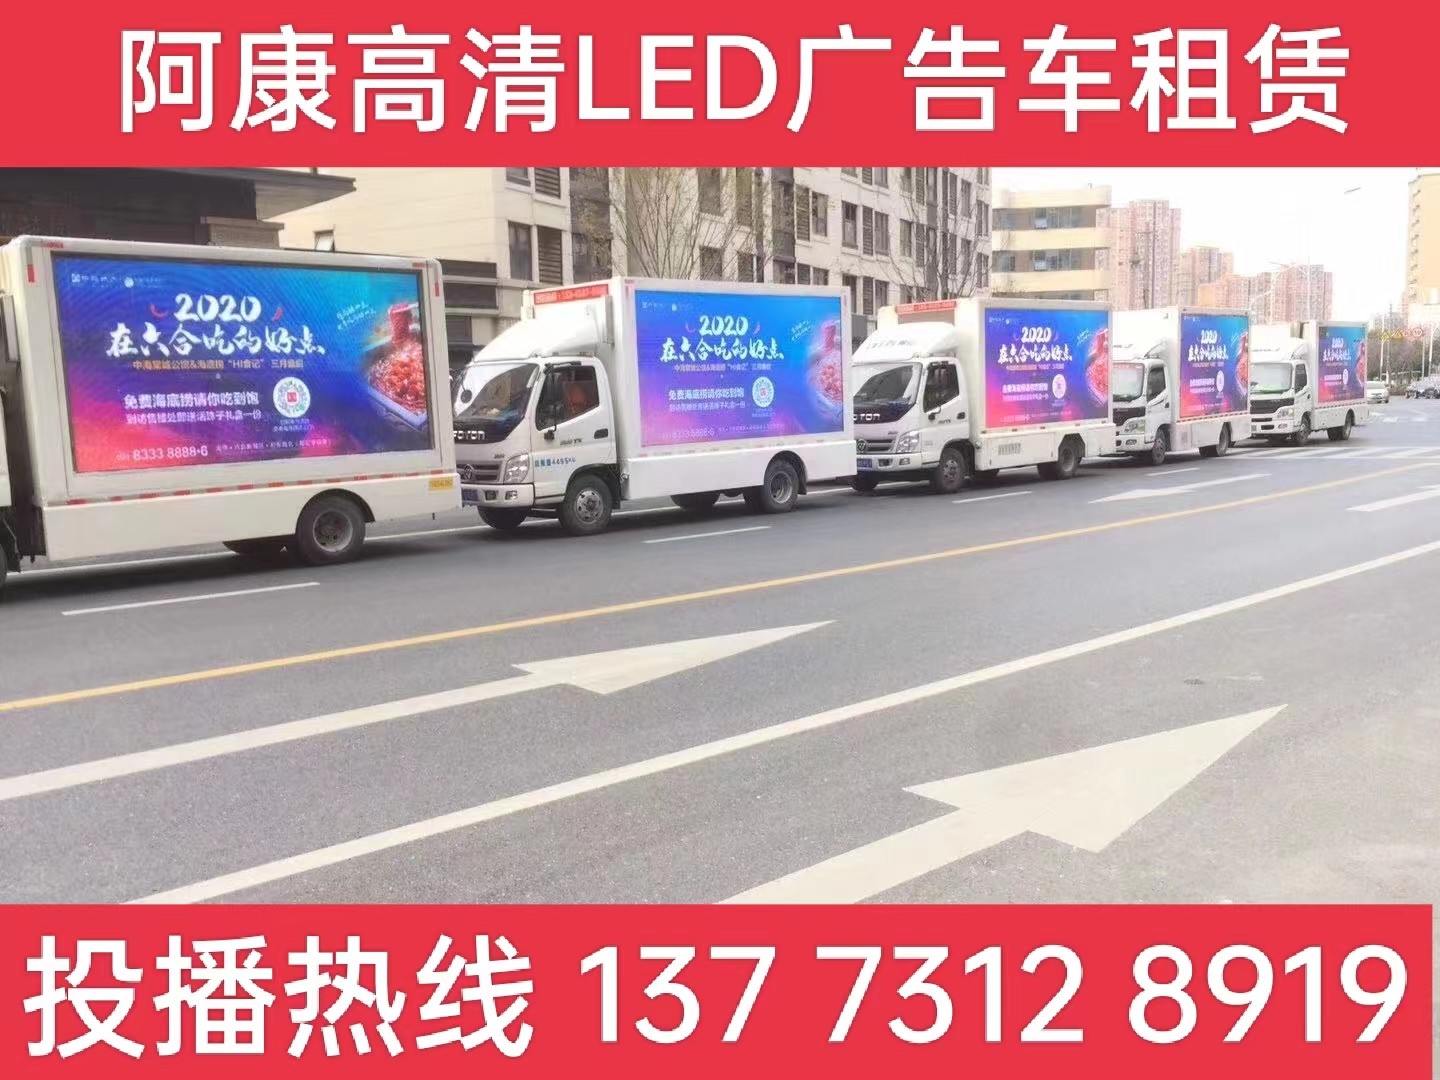 润州区宣传车出租-海底捞LED广告